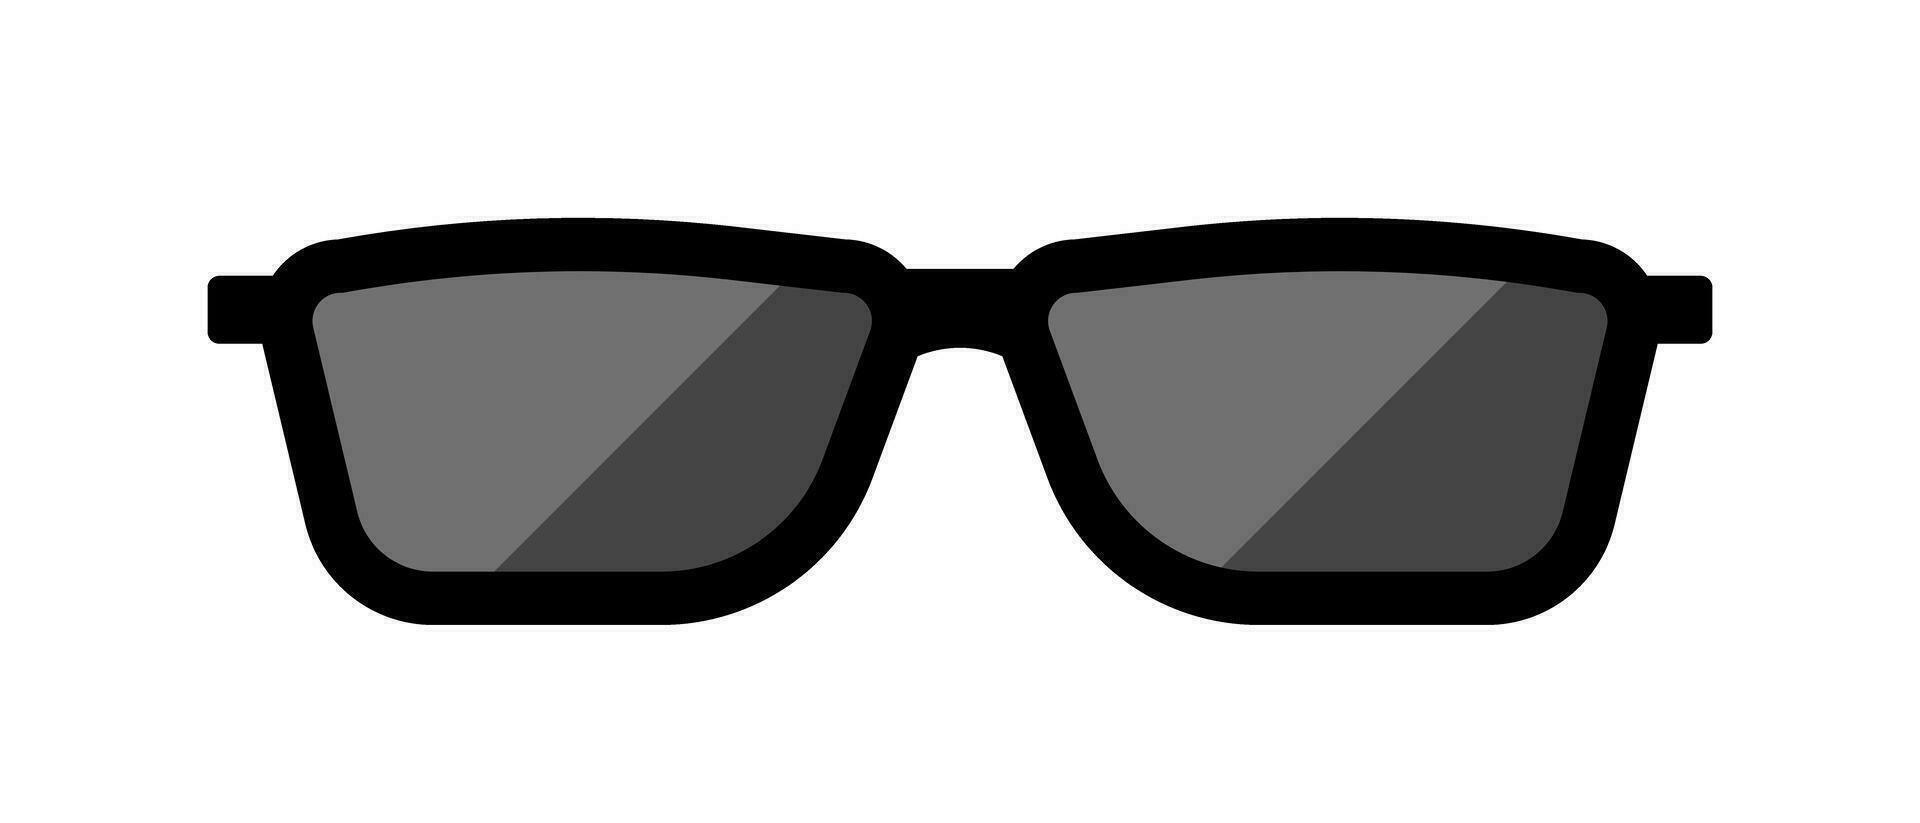 Black sunglass. Glasses icon. Vector. vector